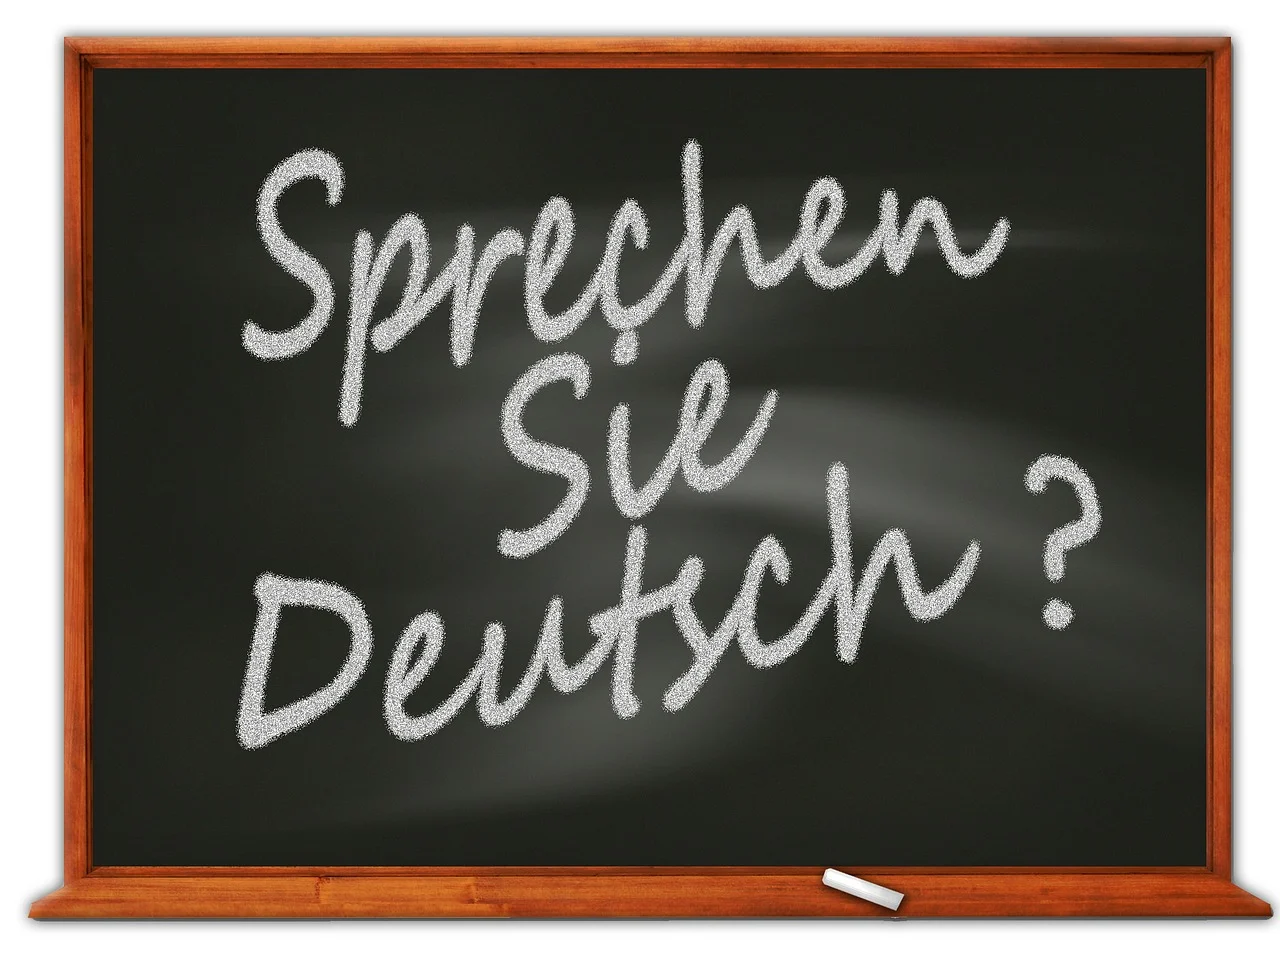 Deutsche Sprache wird zur Internetsensation